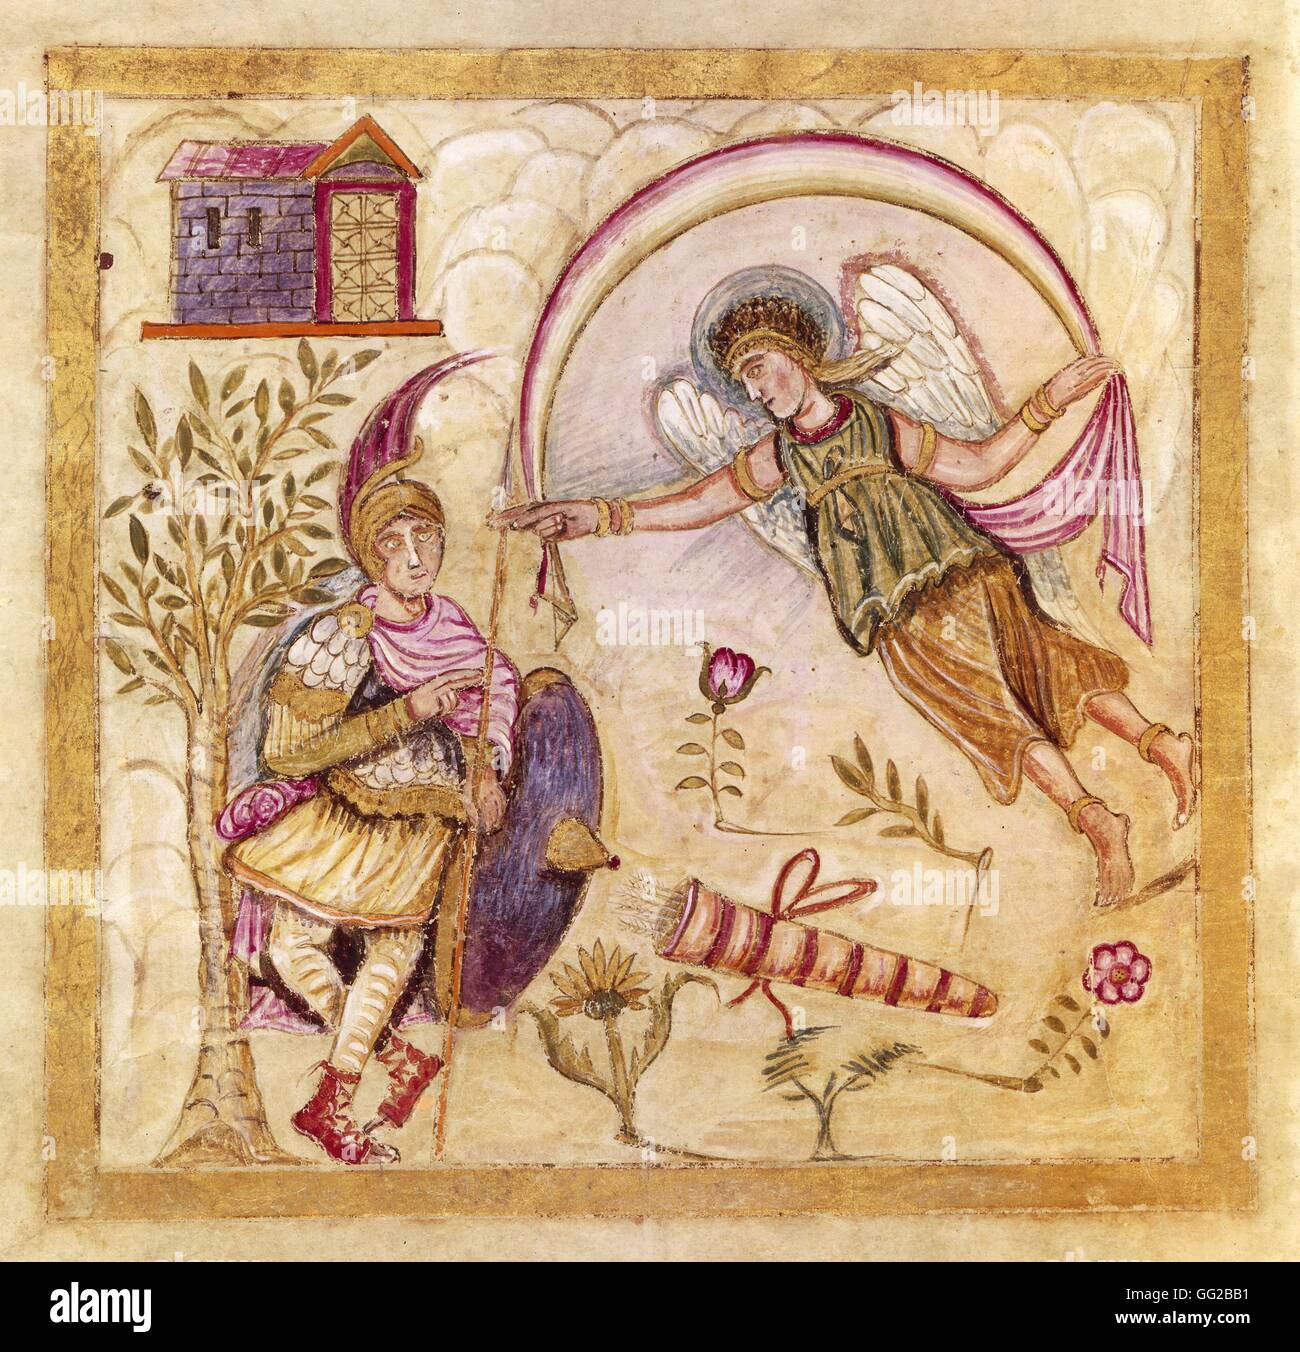 Illustrato e manoscritto illuminato del "Eneide" da Virgile. Medioevo Roma. Biblioteca del Vaticano Foto Stock